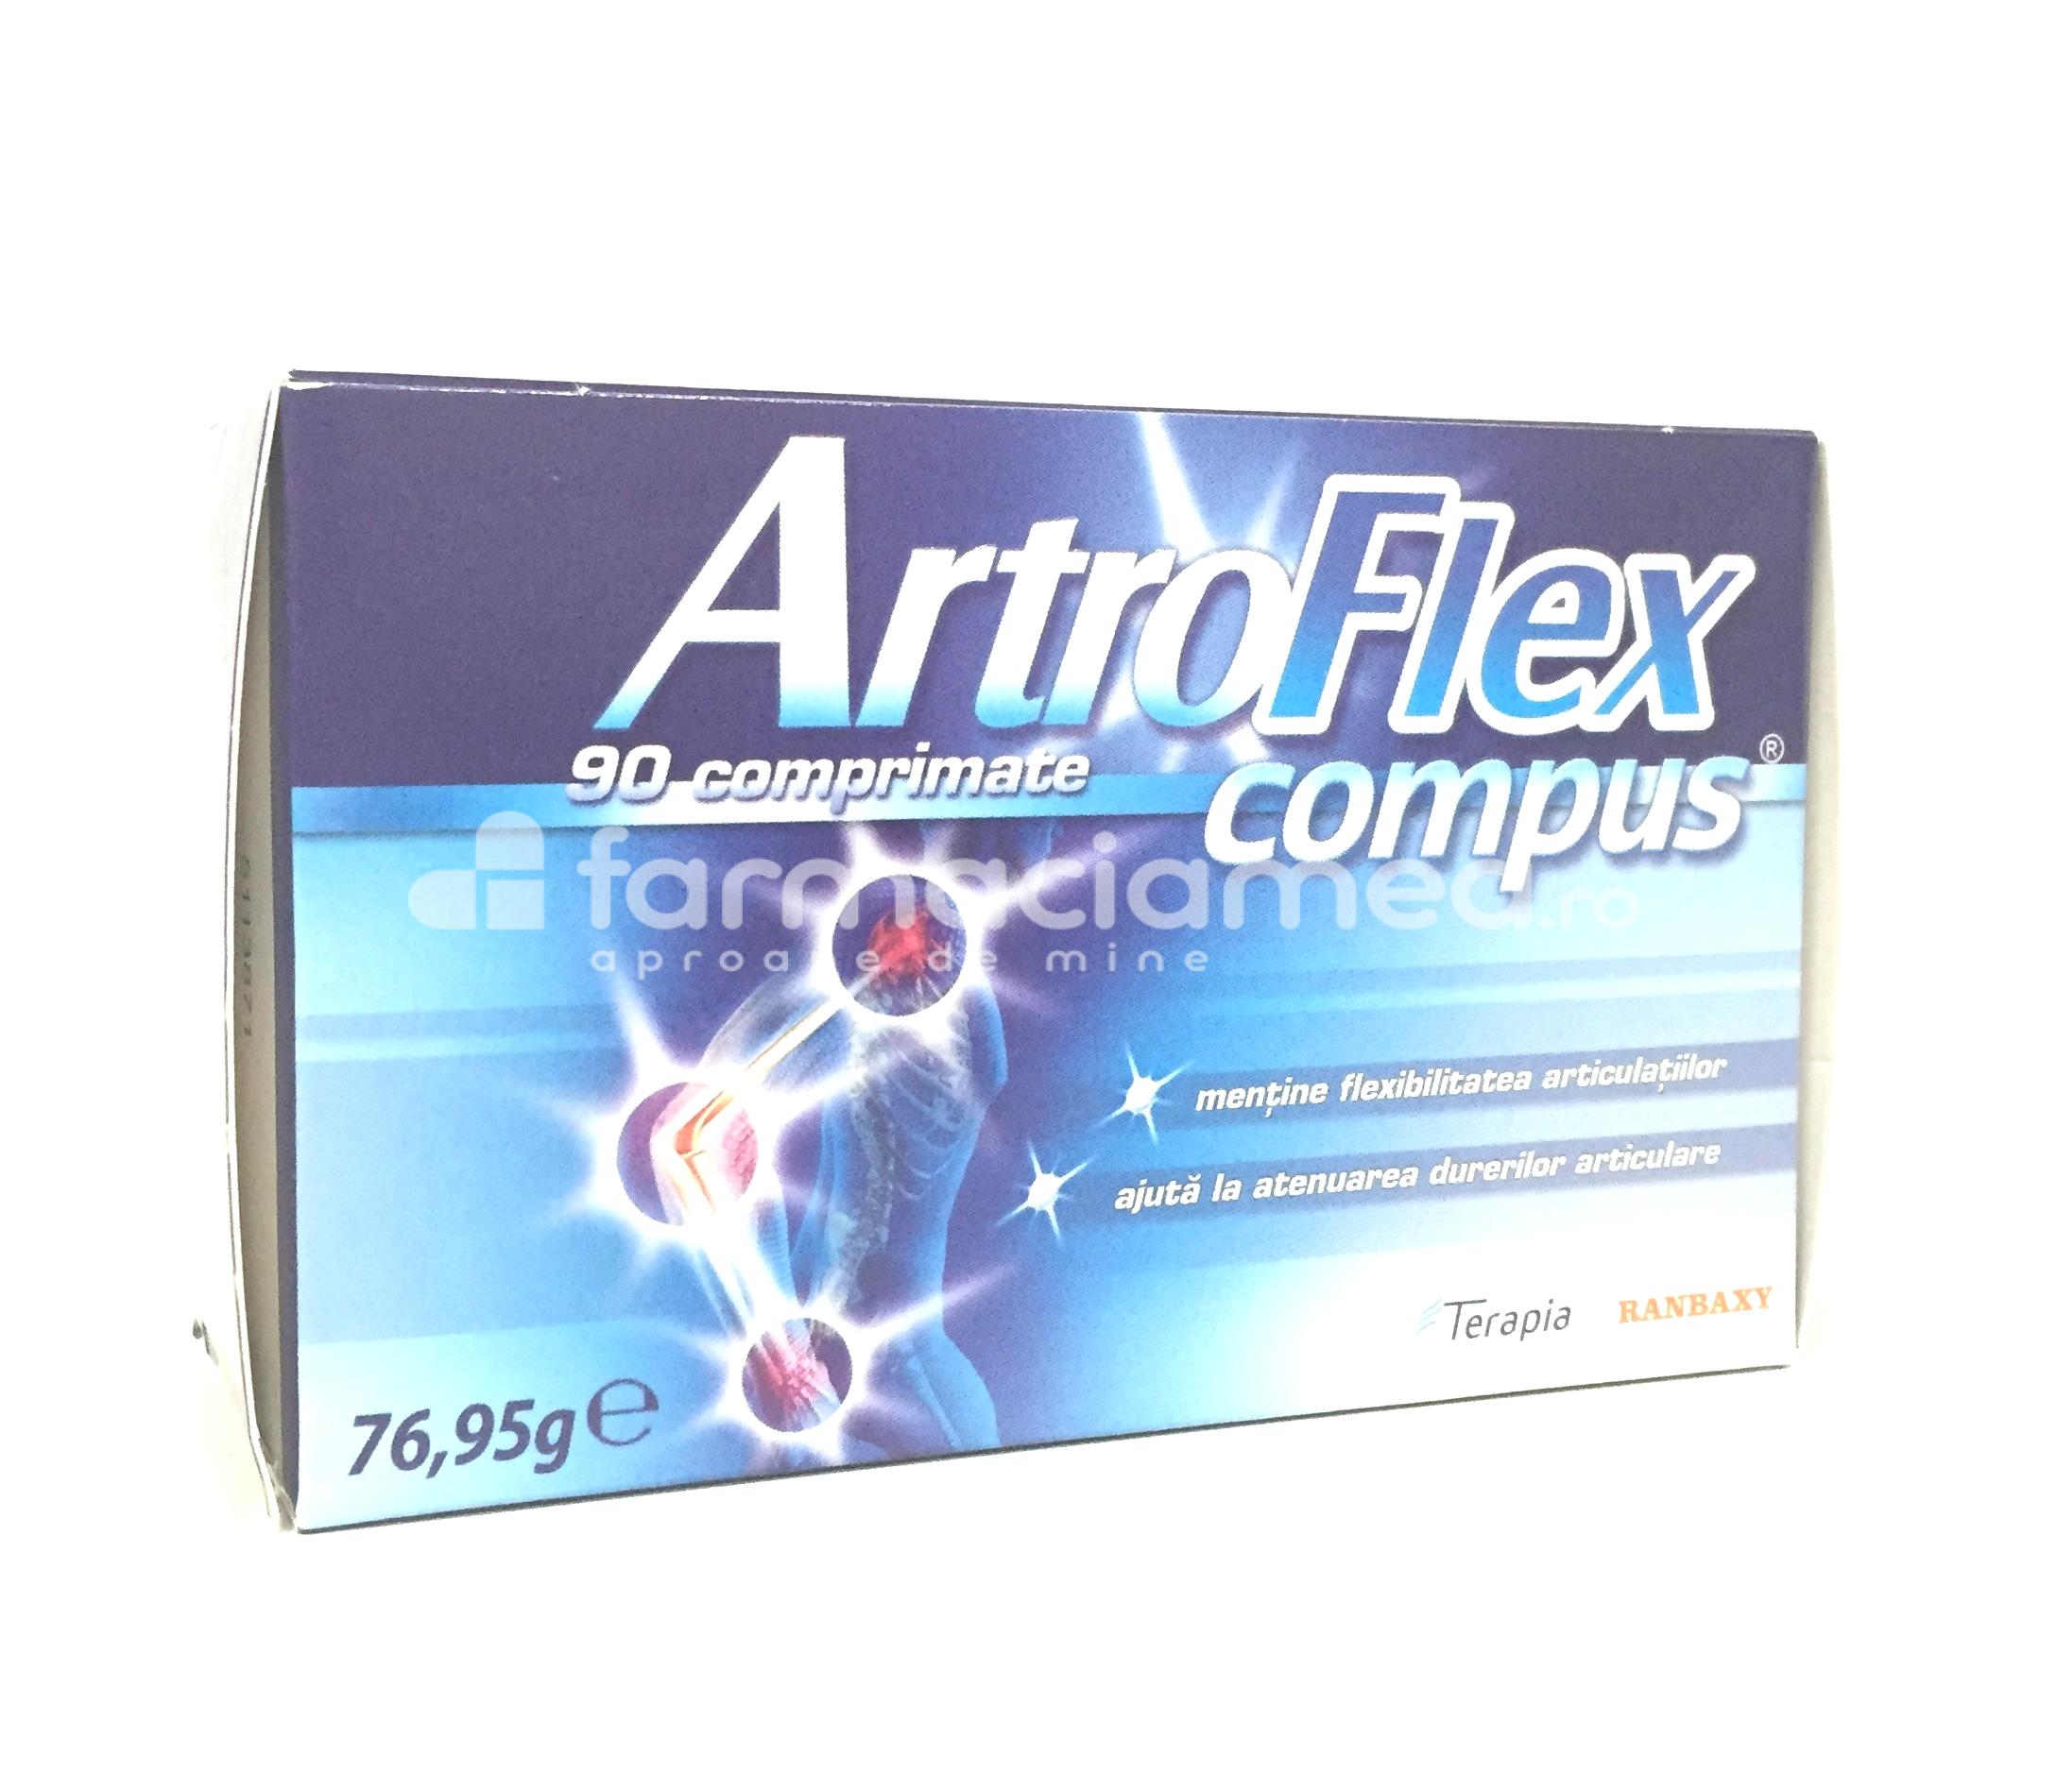 Dureri articulare - Artroflex compus pentru articulatii, imbunatateste mobilitatea articulatiilor si scade rigiditatea, 90 de comprimate, Terapia, farmaciamea.ro